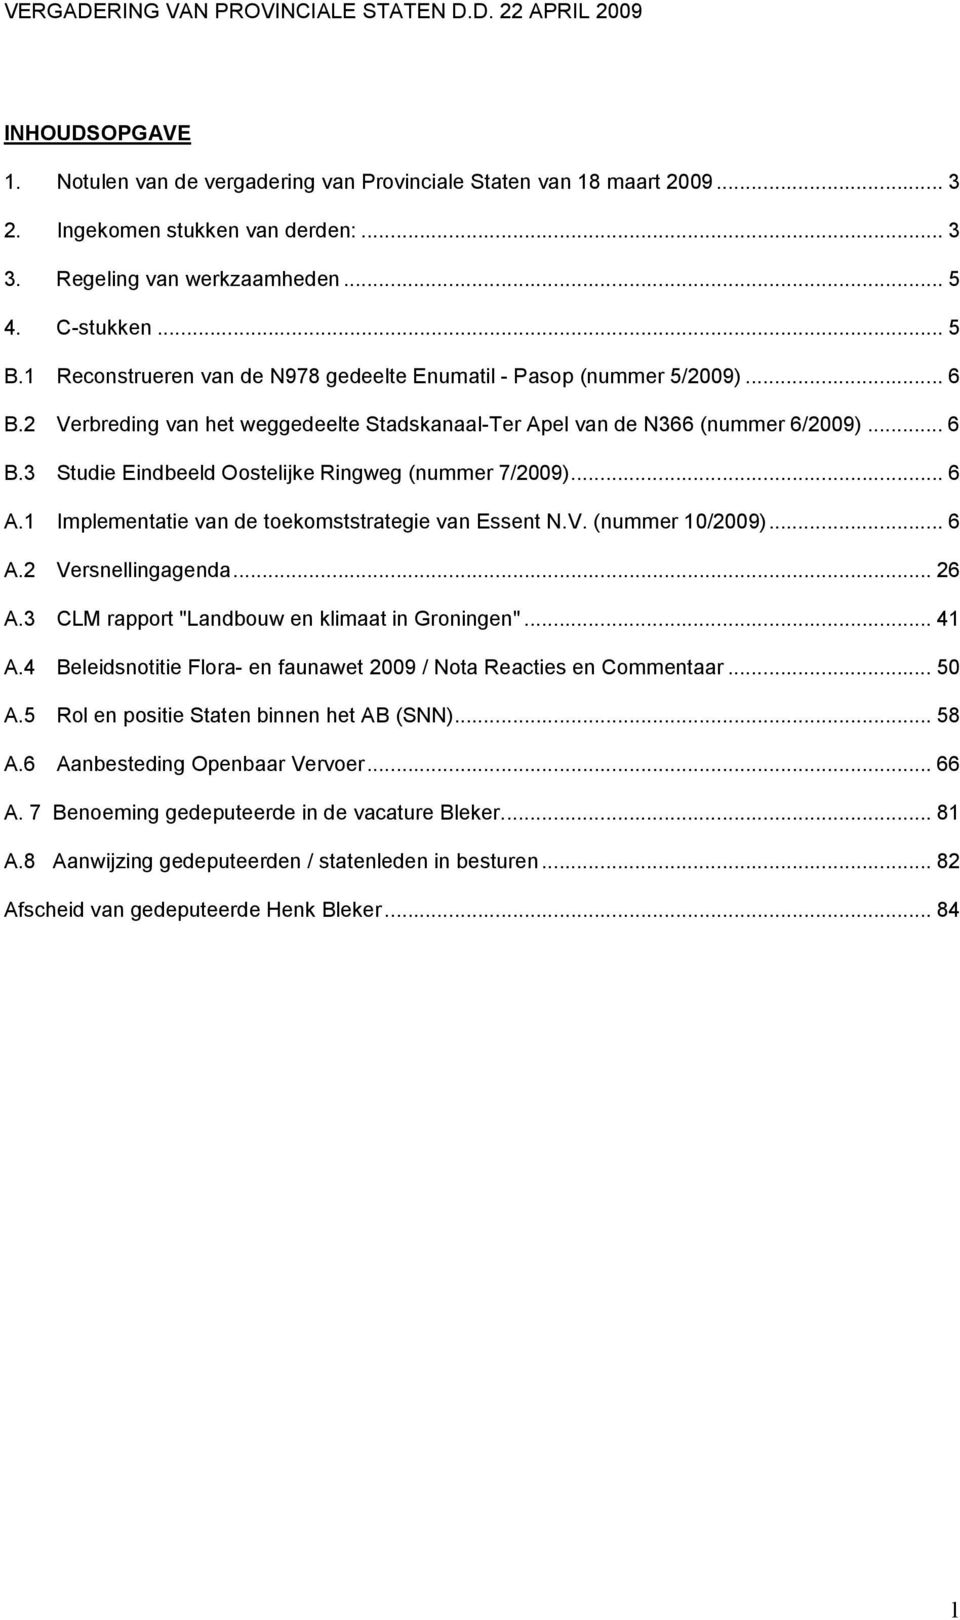 .. 6 A.1 Implementatie van de toekomststrategie van Essent N.V. (nummer 10/2009)... 6 A.2 Versnellingagenda... 26 A.3 CLM rapport "Landbouw en klimaat in Groningen"... 41 A.